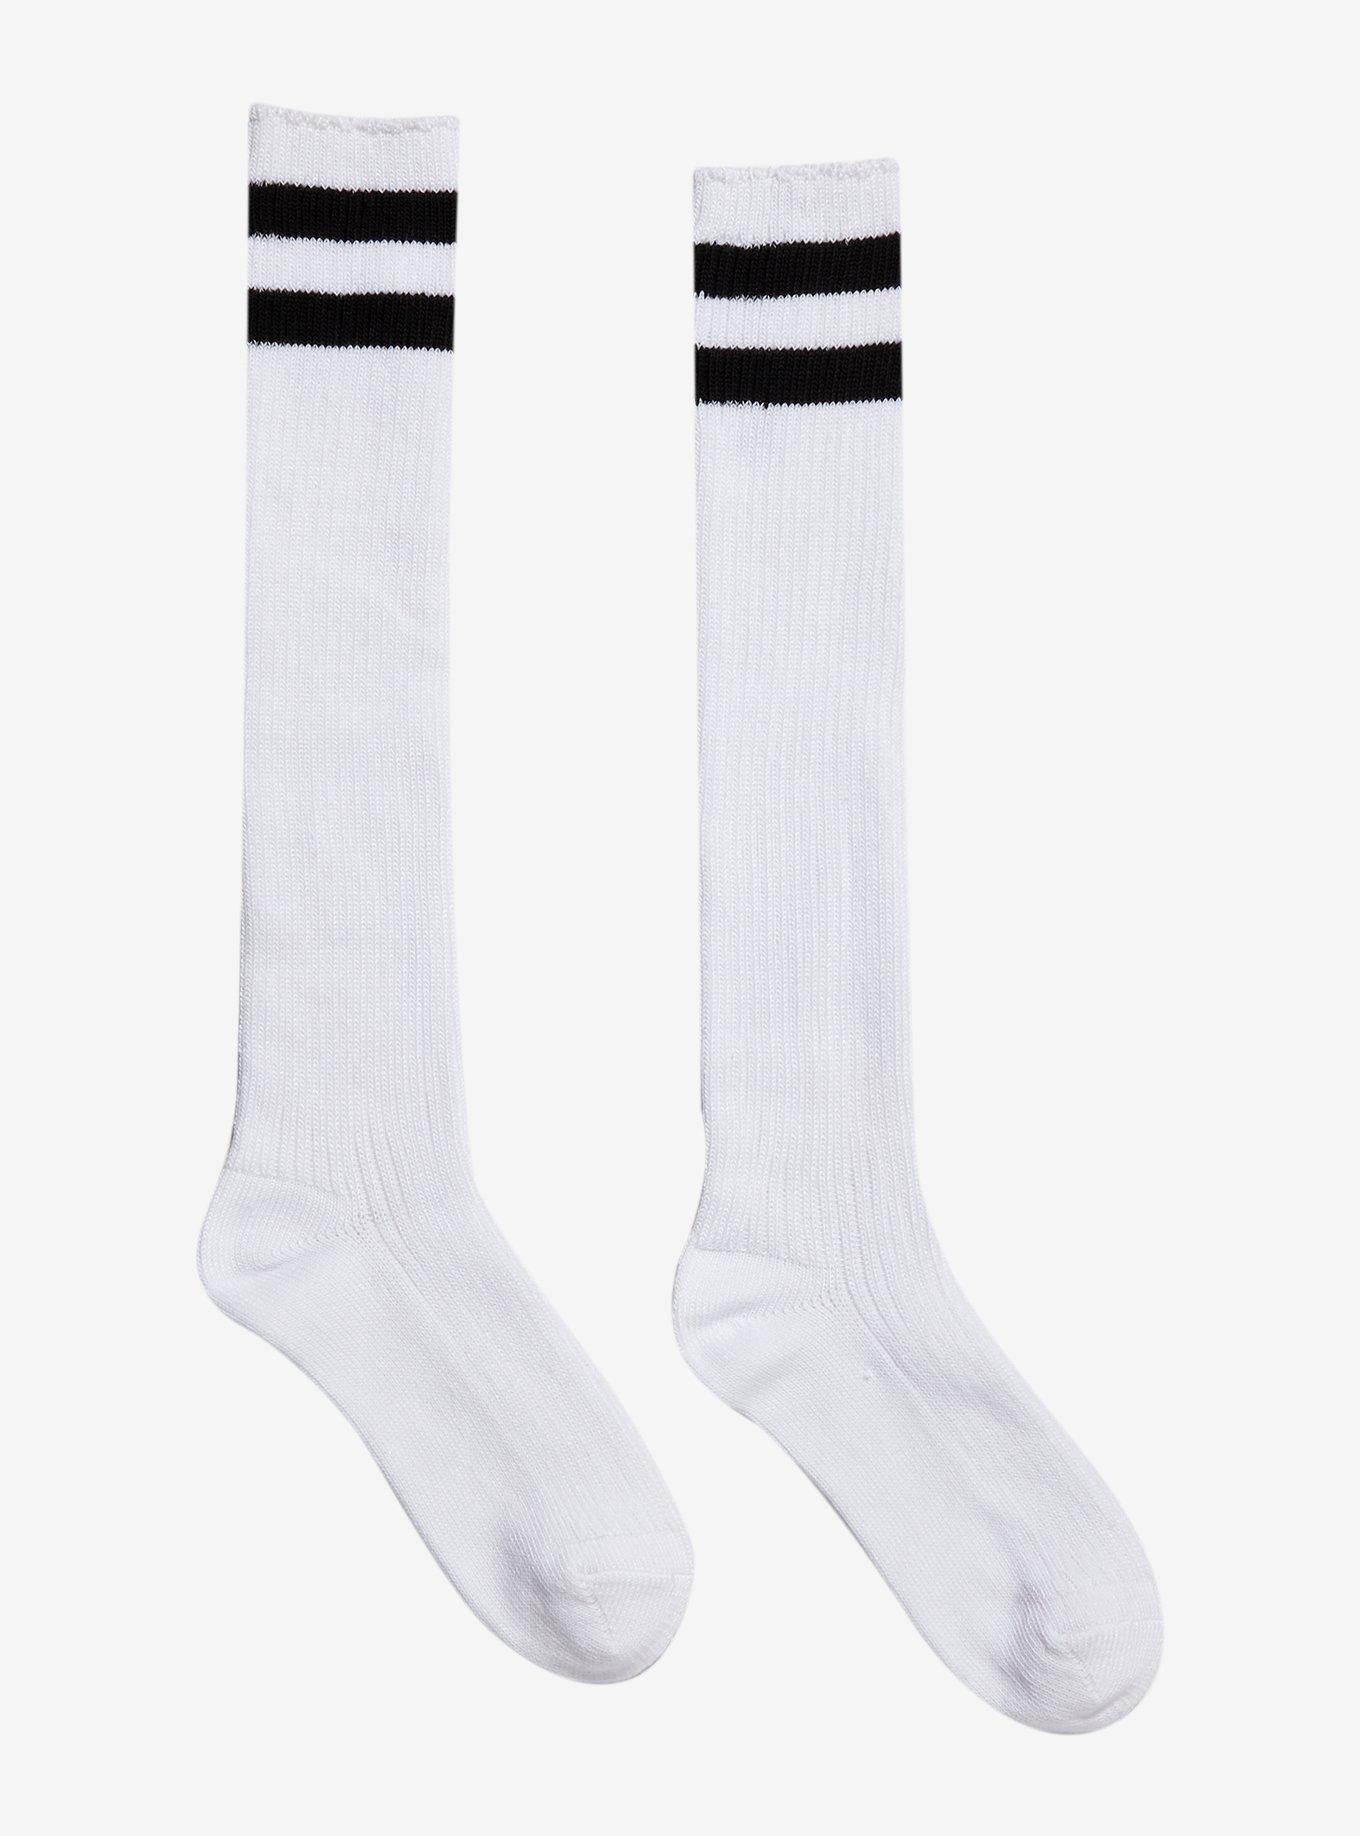 Black & White Varsity Knee-High Socks